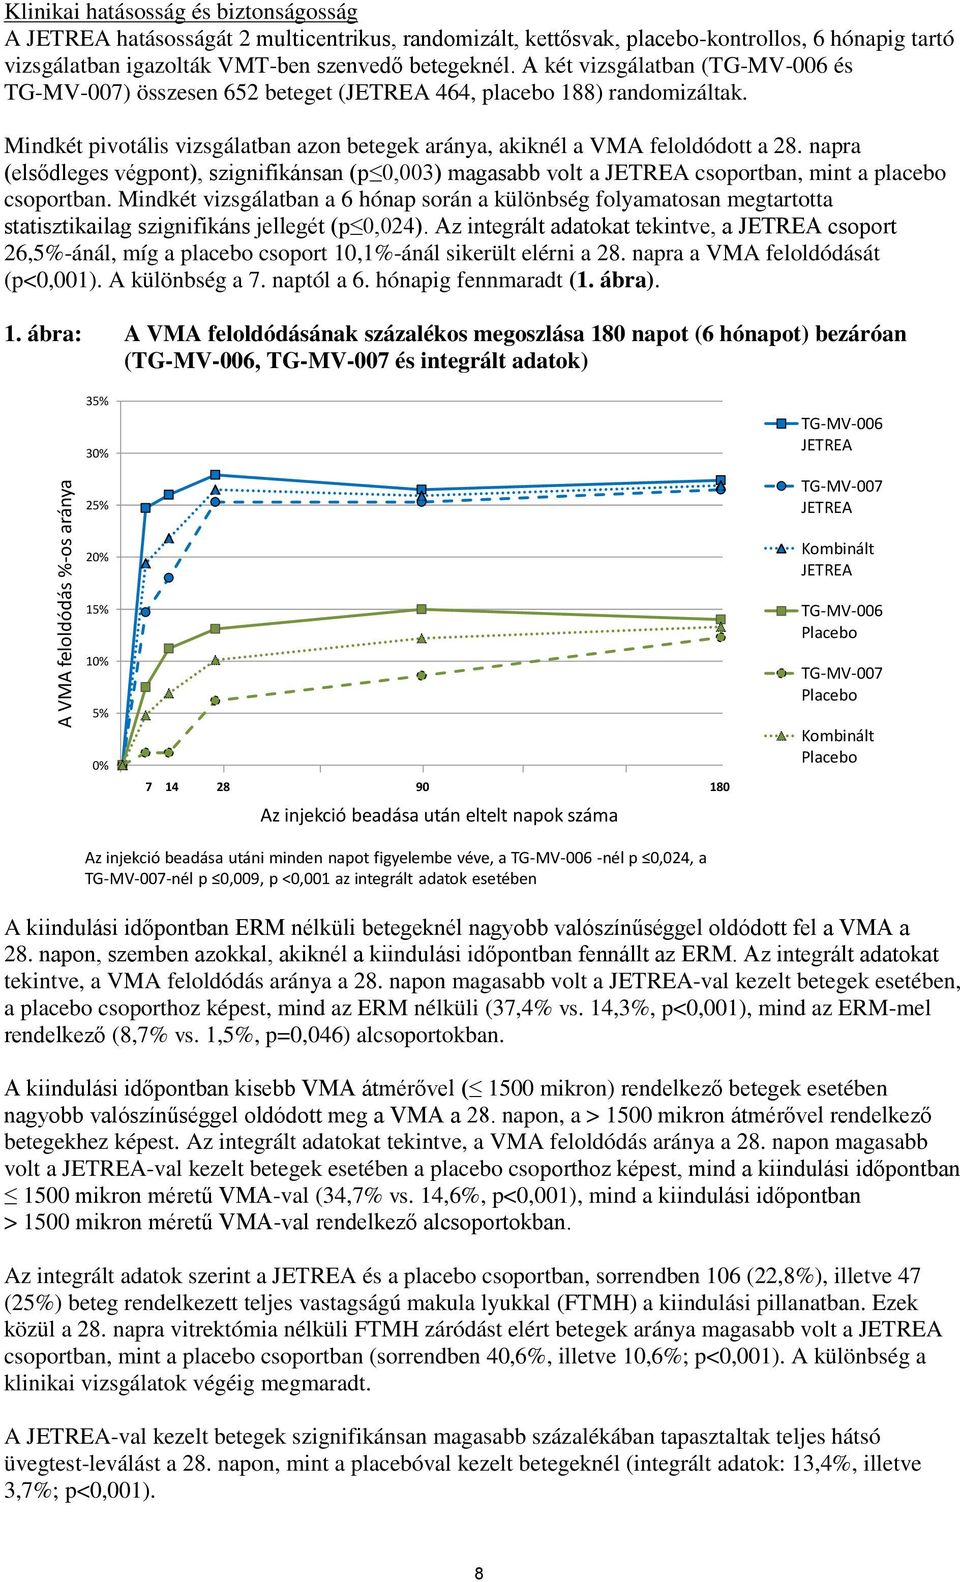 Mindkét pivotális vizsgálatban azon betegek aránya, akiknél a VMA feloldódott a 28. napra (elsődleges végpont), szignifikánsan (p 0,003) magasabb volt a JETREA csoportban, mint a placebo csoportban.